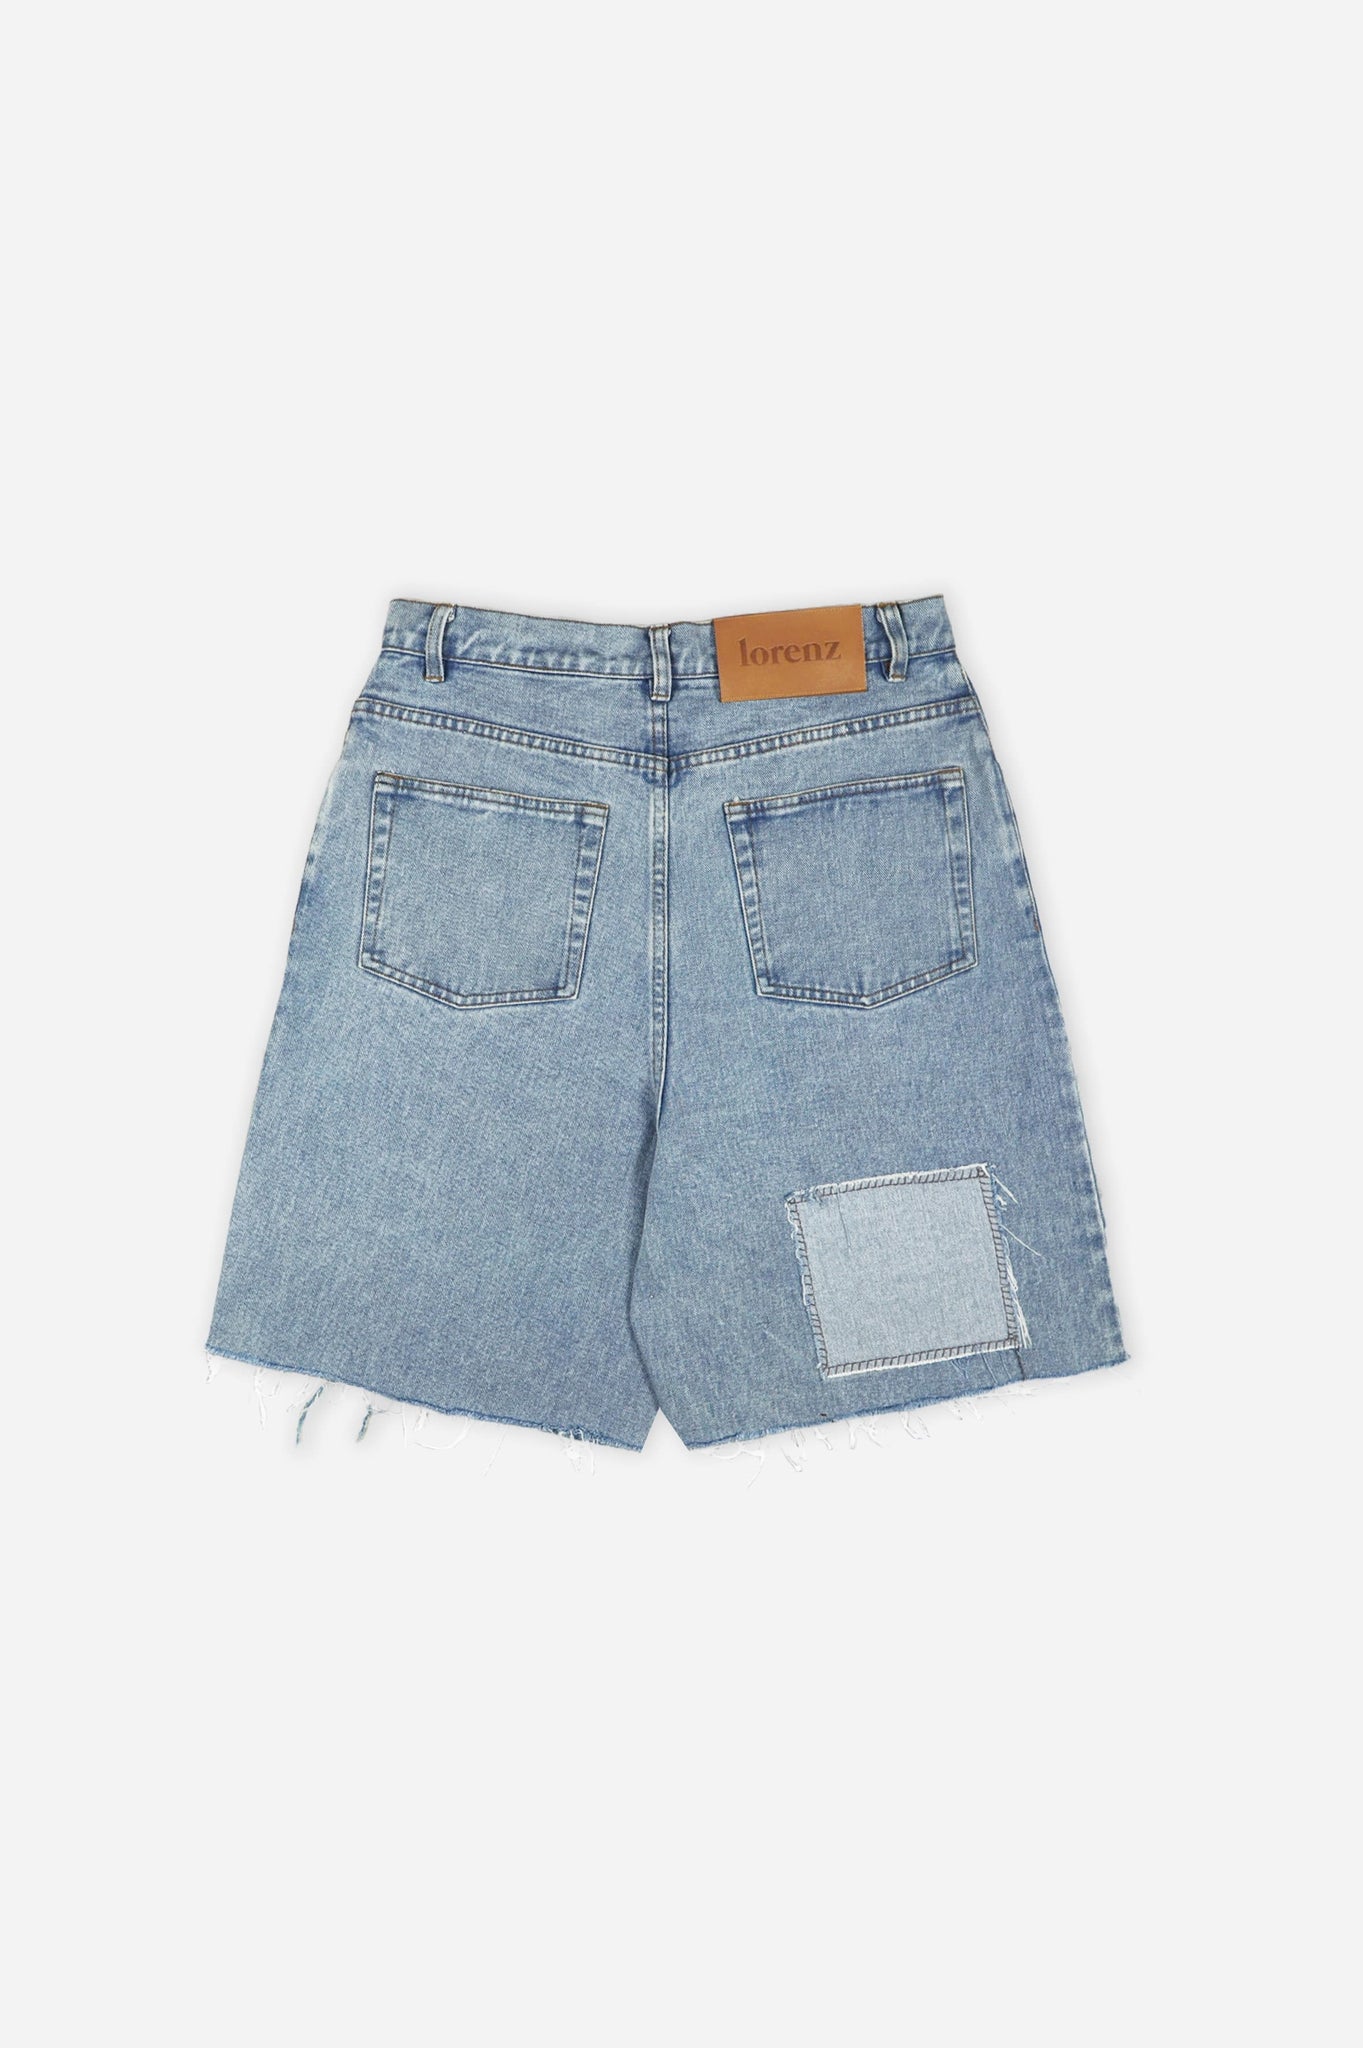 Blue Patchwork Denim Shorts - Repurposed